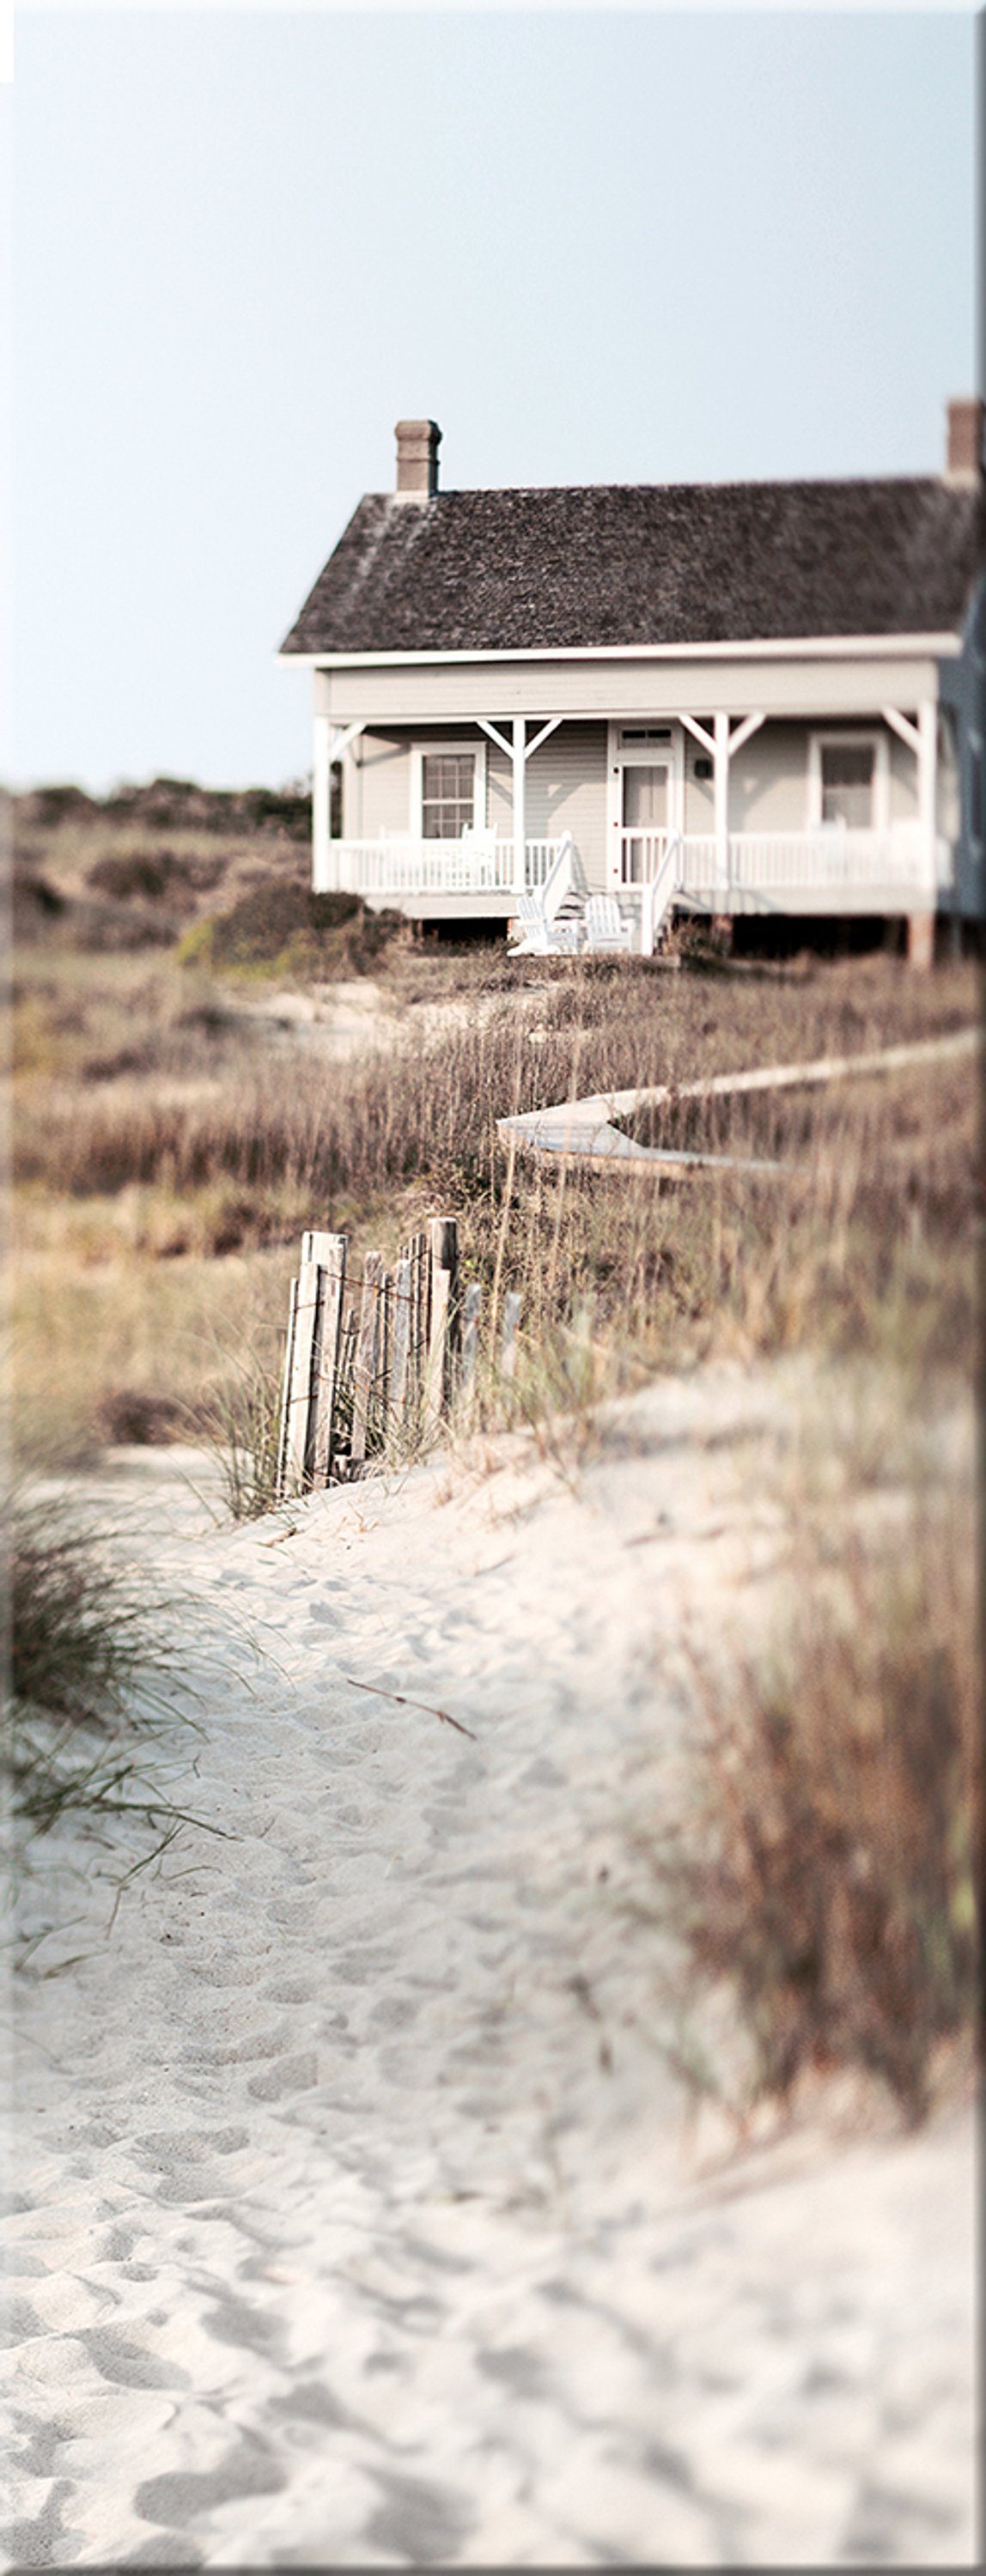 artissimo Glasbild Glasbild Landschaft: Bild Meer Haus, I zum Glas Landschaft / aus Meer 30x80cm Strand Weg Strand